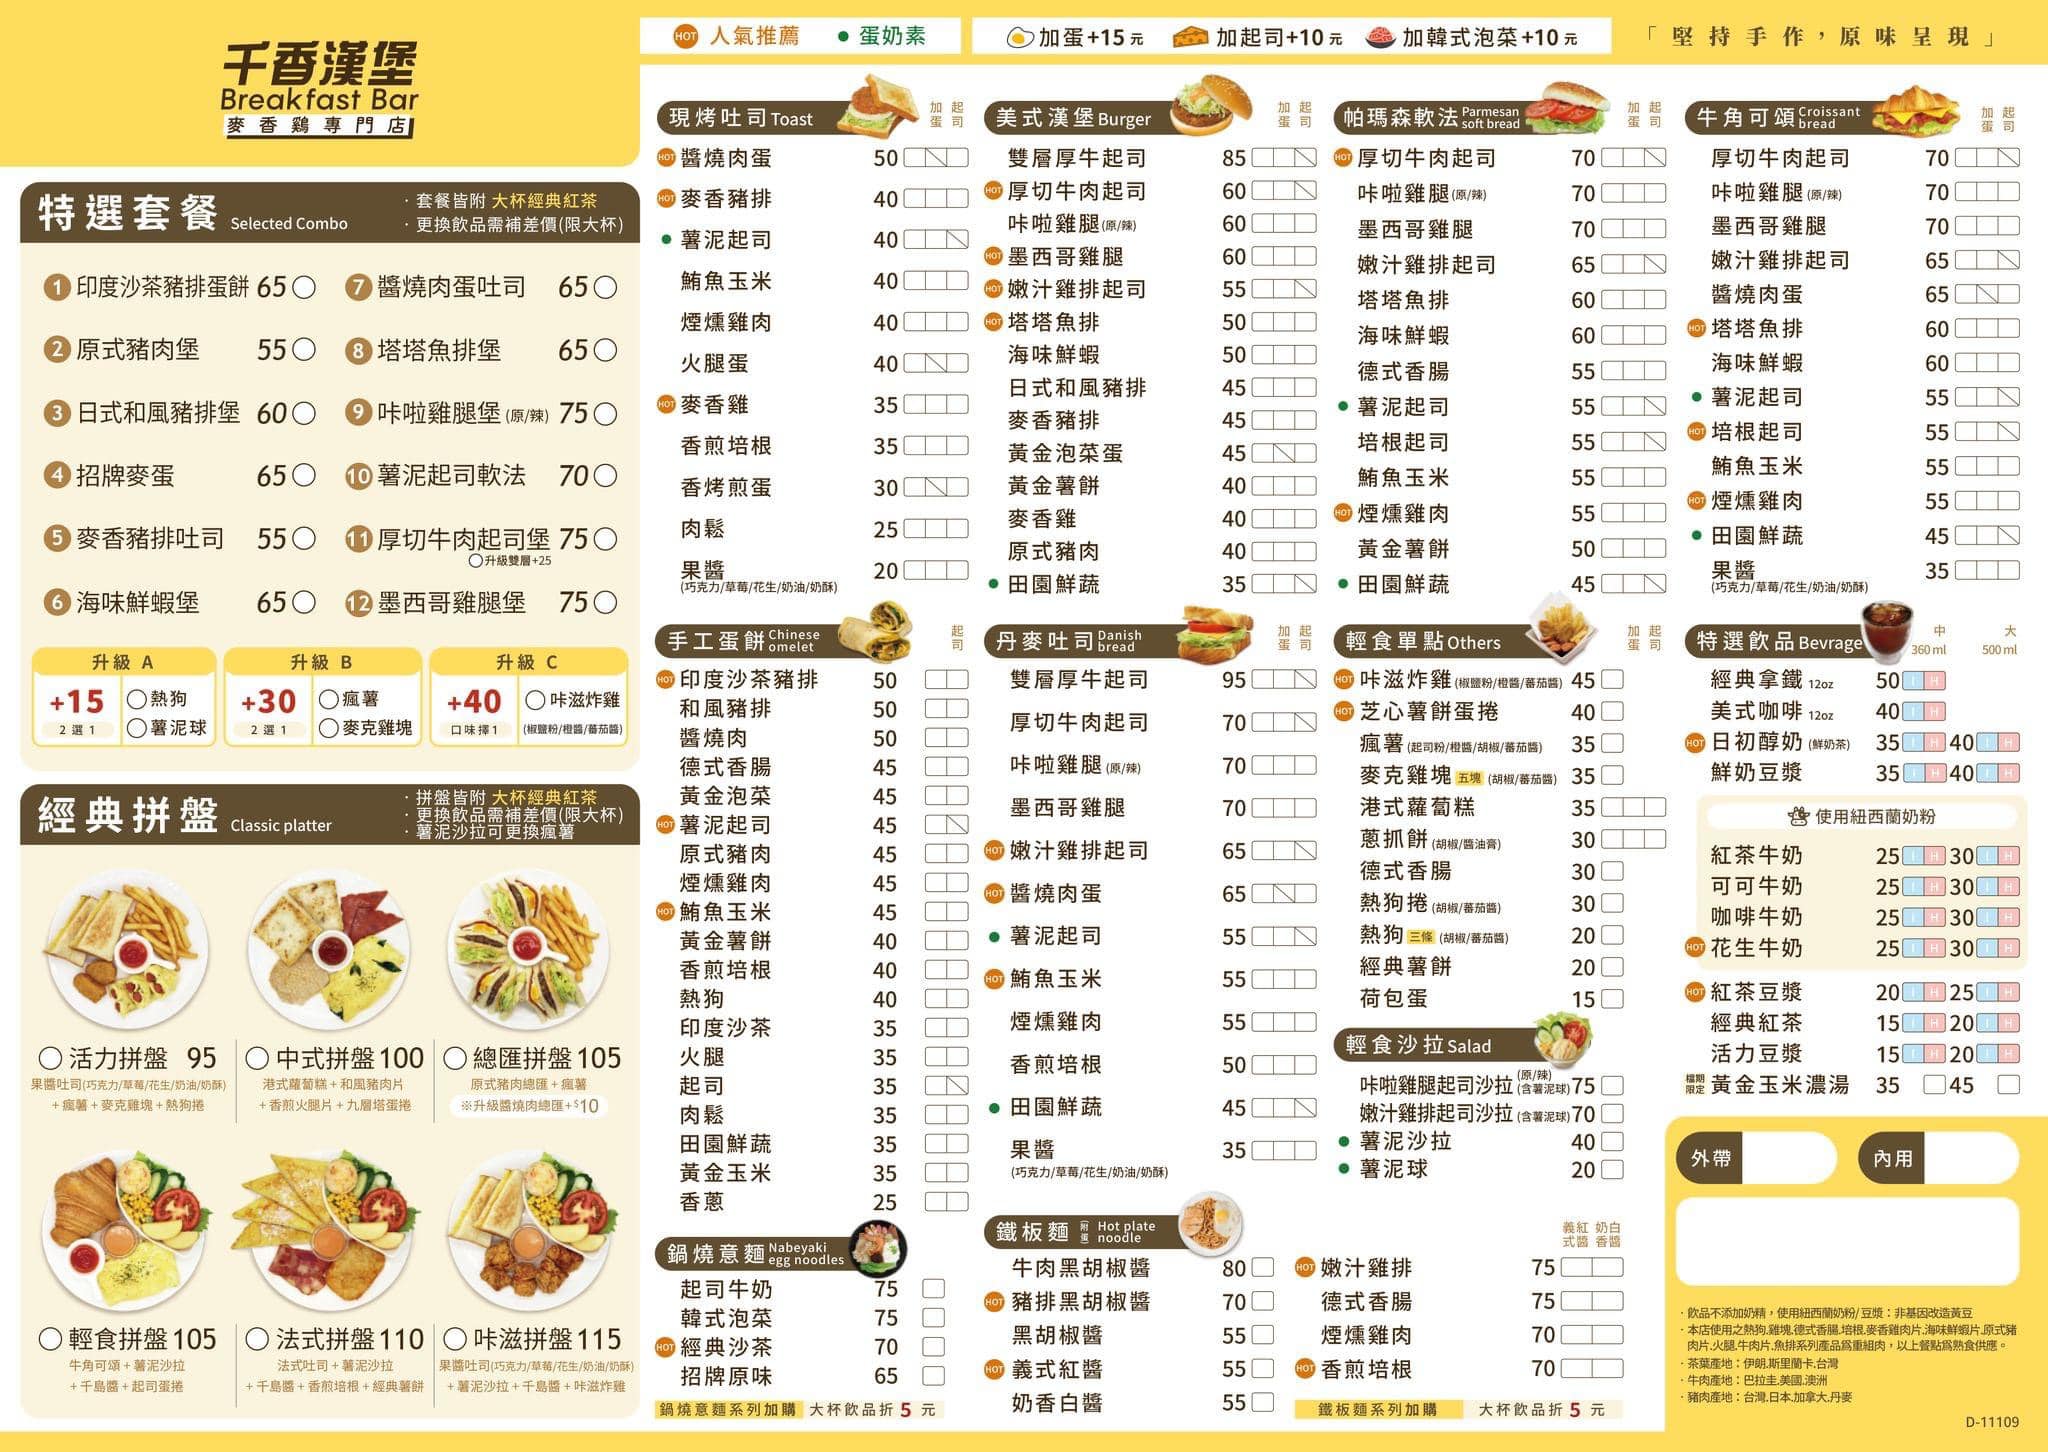 千香漢堡 · 員林早午餐 | 來自台南的老字號早餐店,附菜單